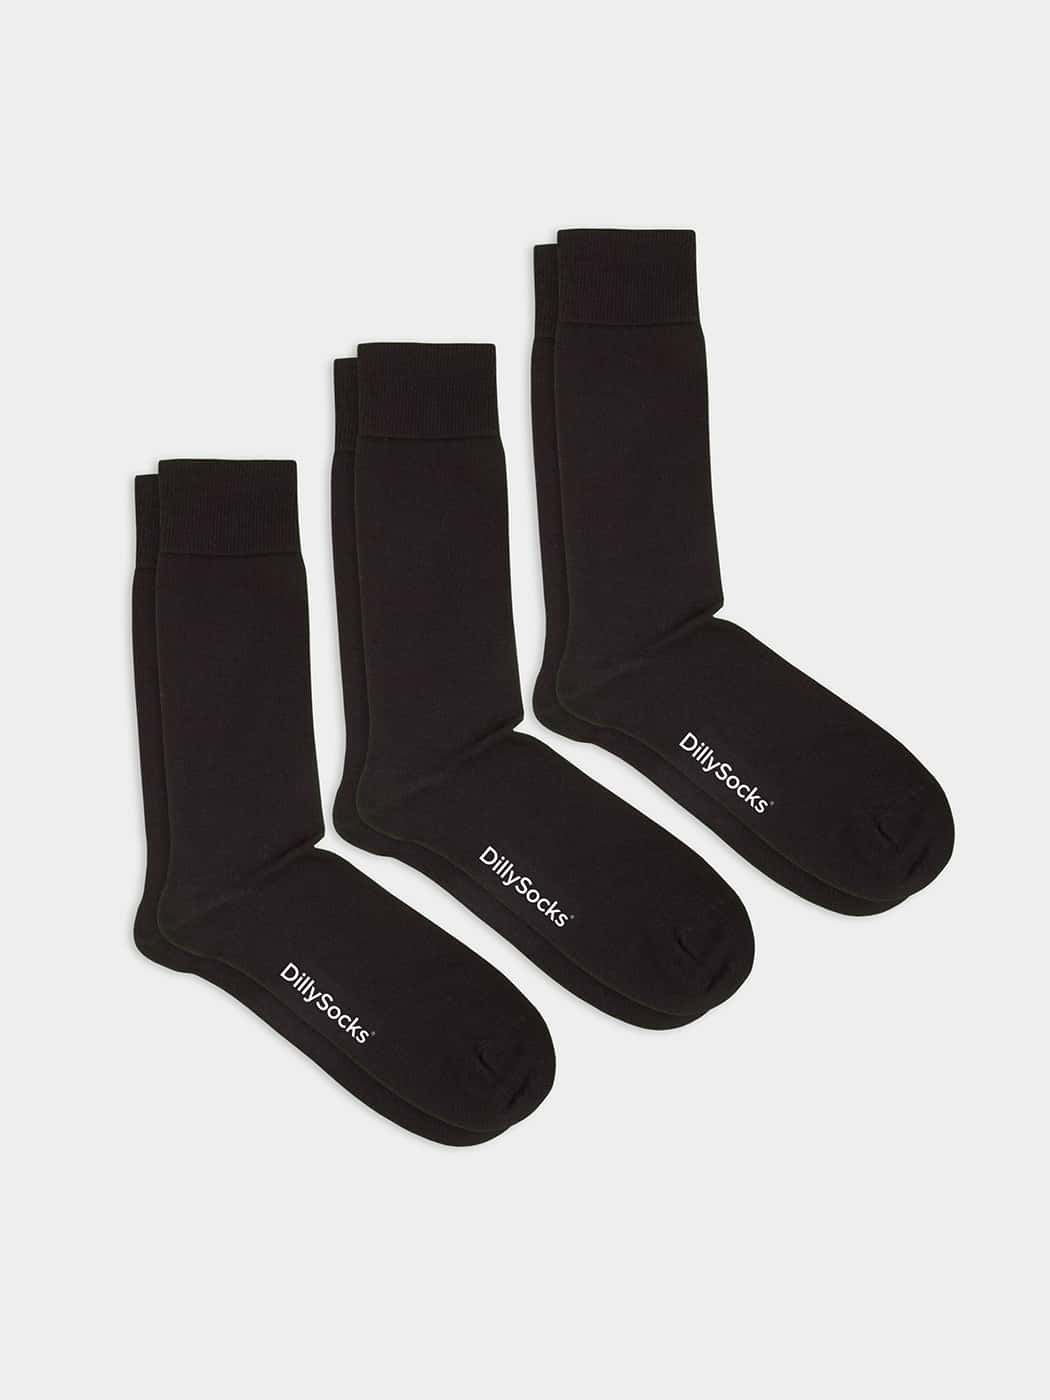 - Socken-Sets in Schwarz mit Uni Motiv/Muster von DillySocks